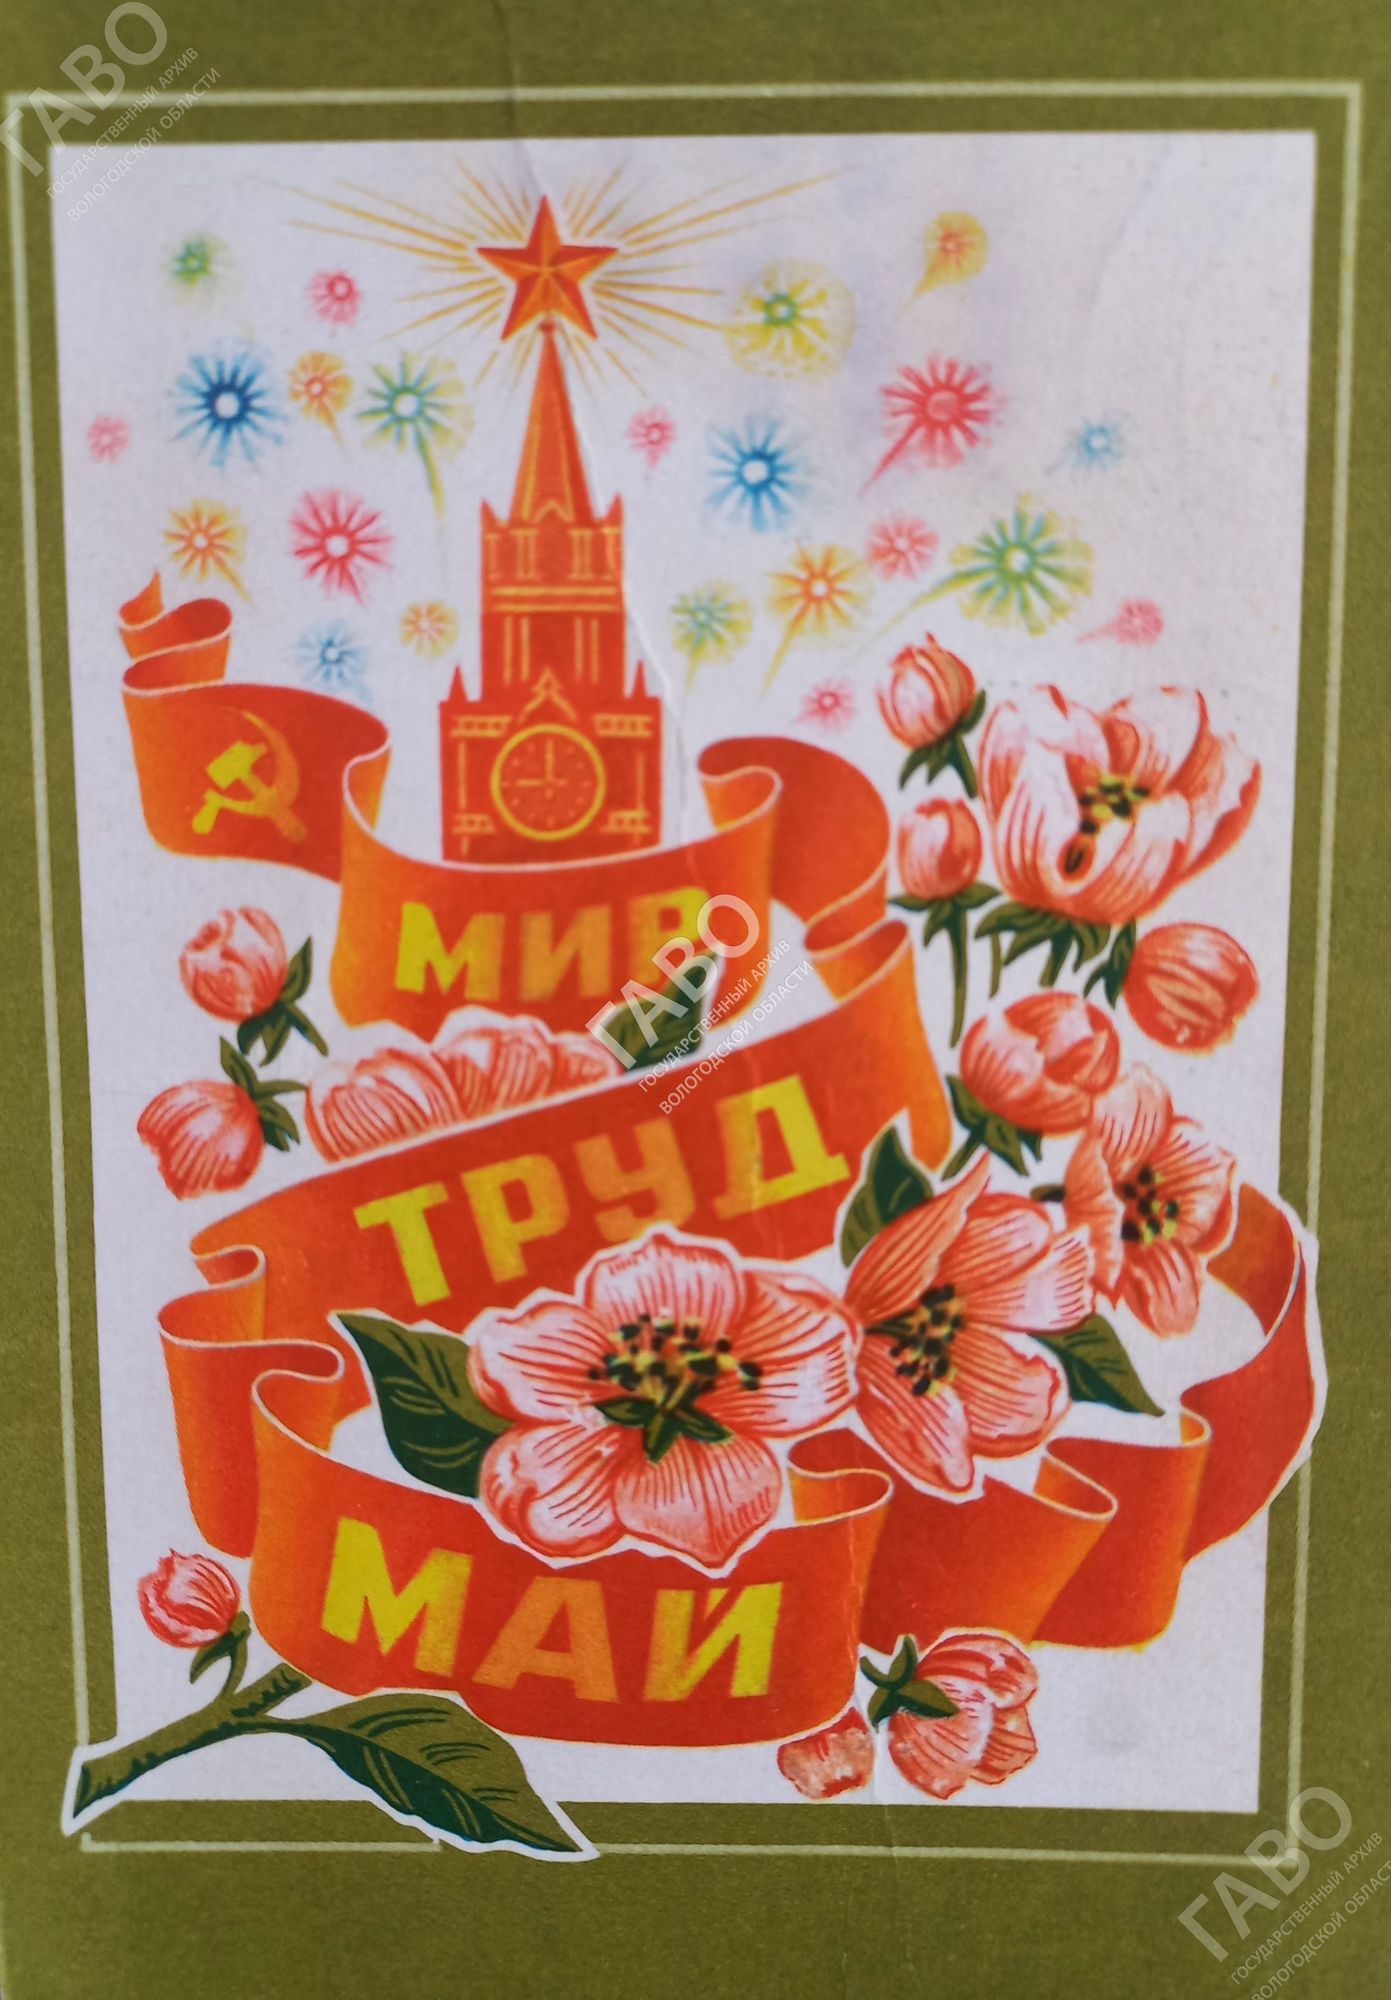 Мир открыток. Мир труд май. 1 Мая. Мир труд май с праздником. Советские открытки 70-80 годов.